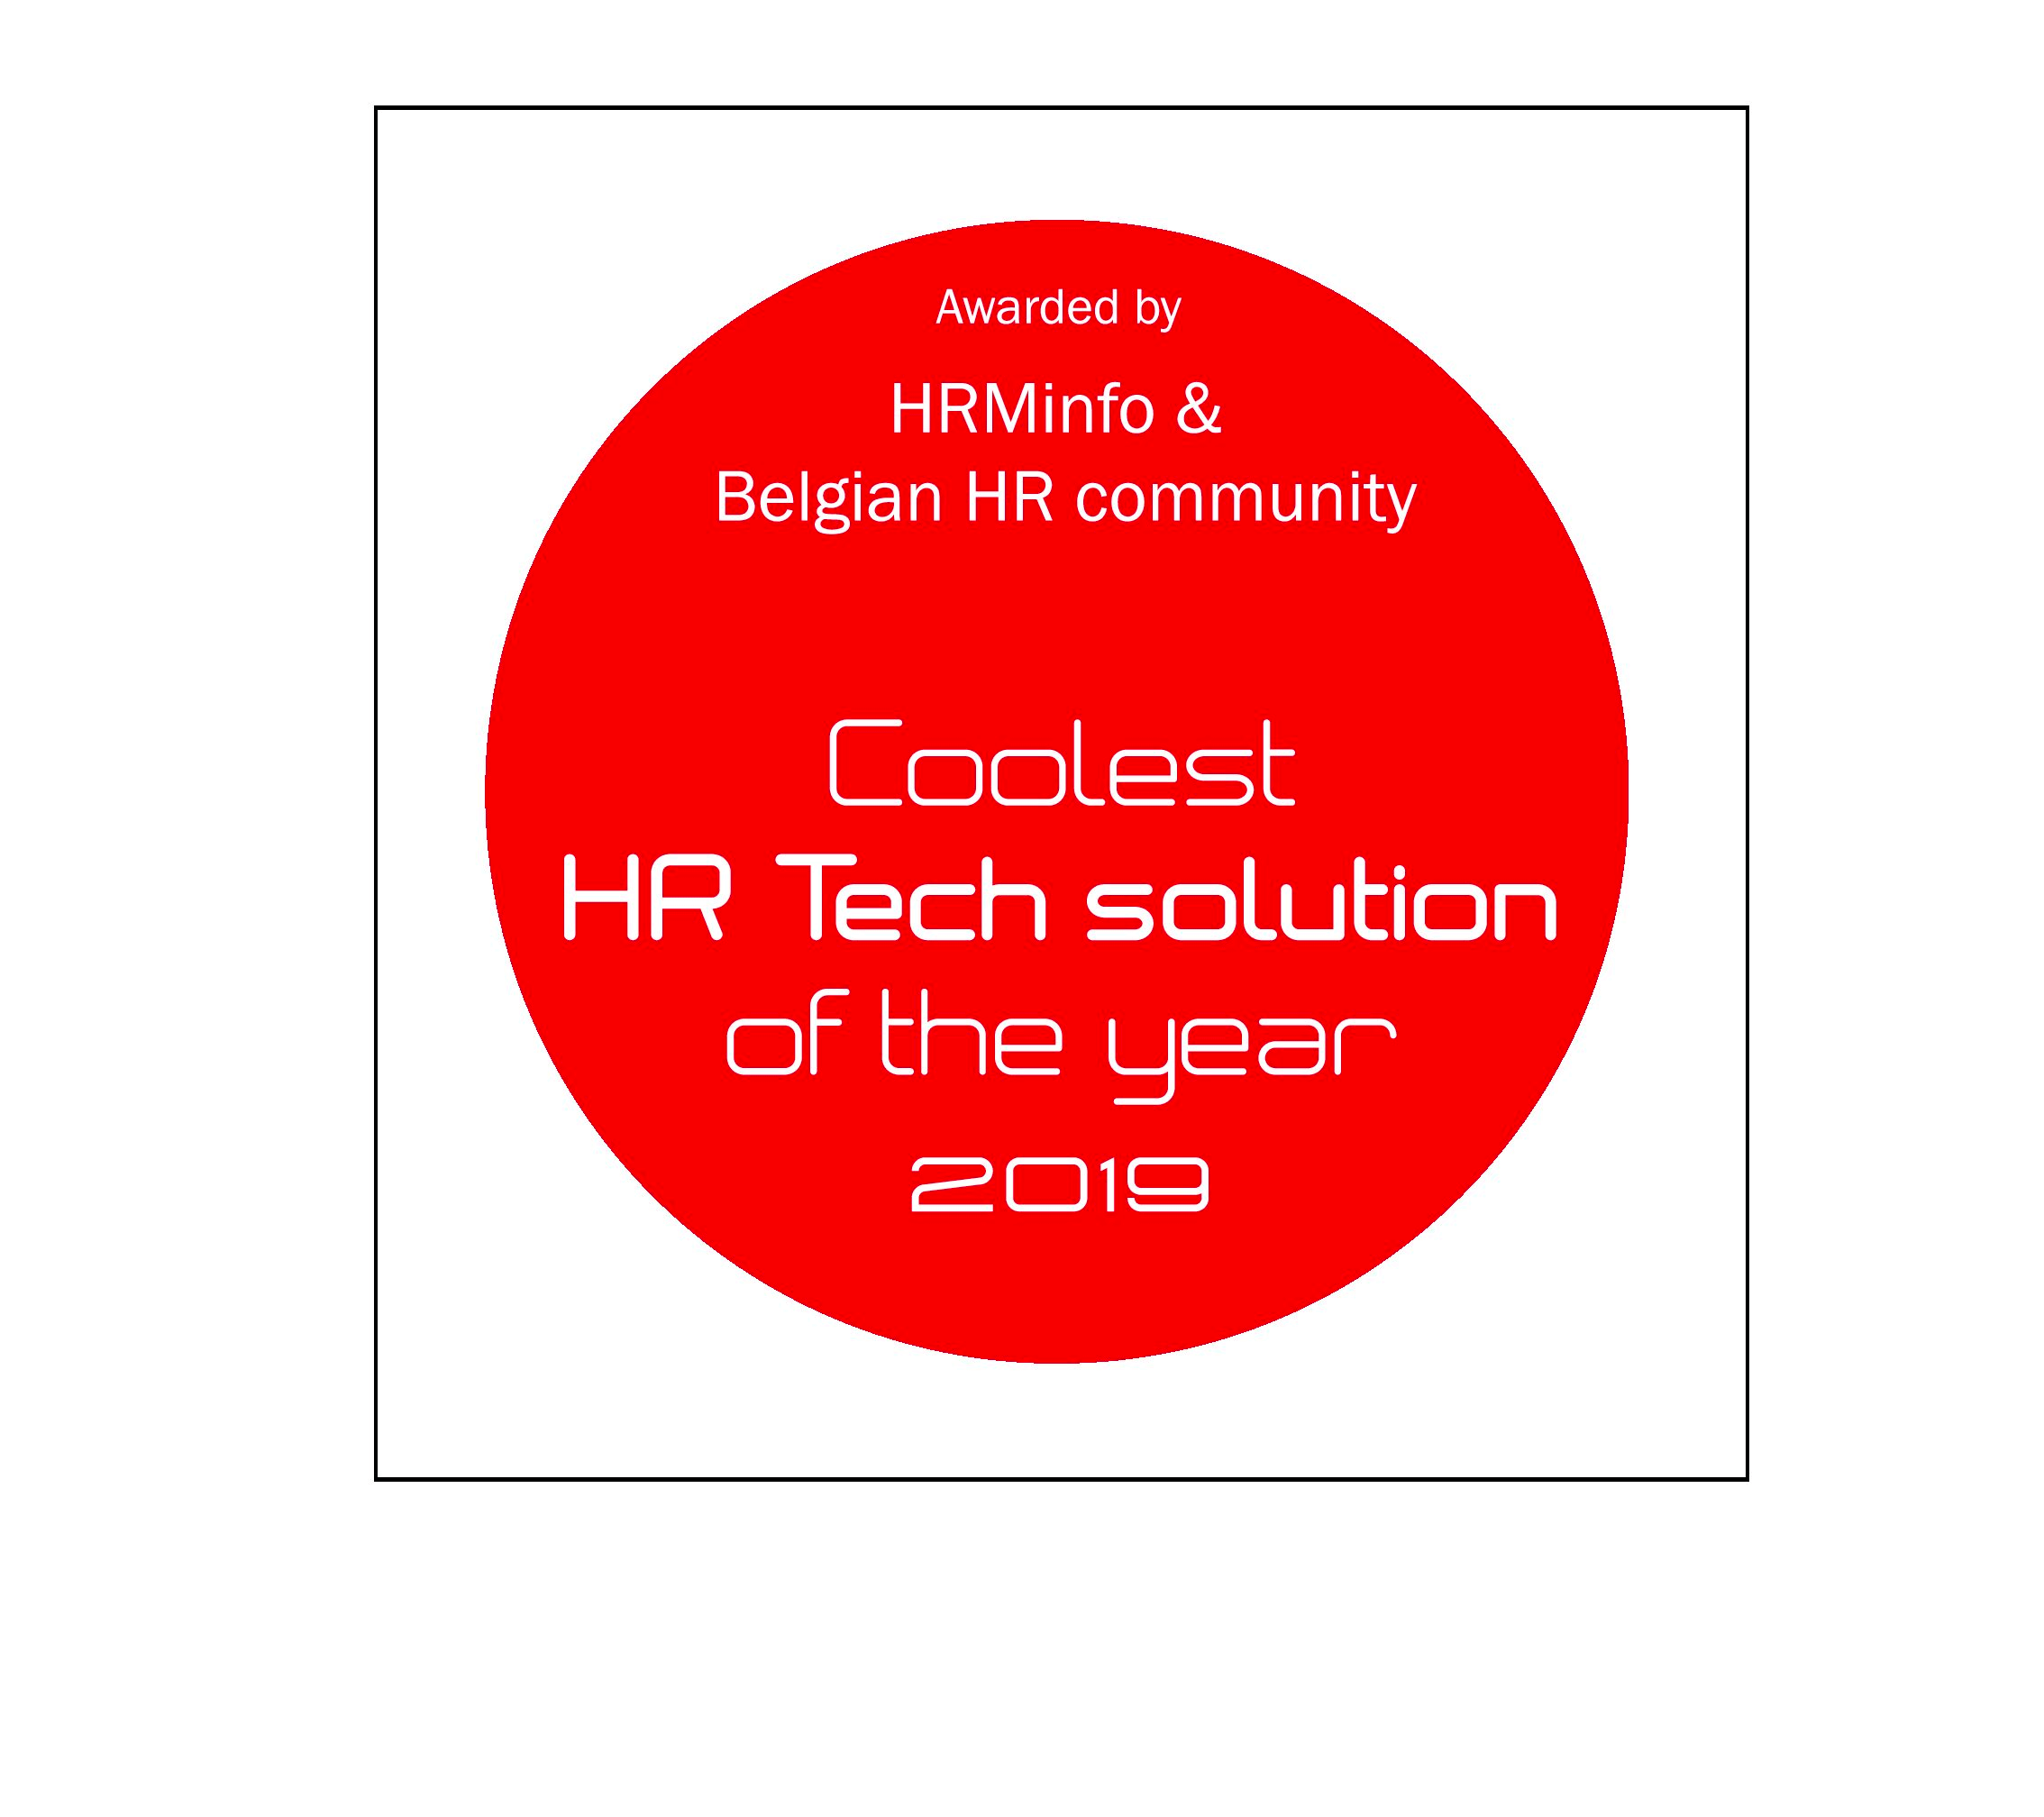 hr tech solutions